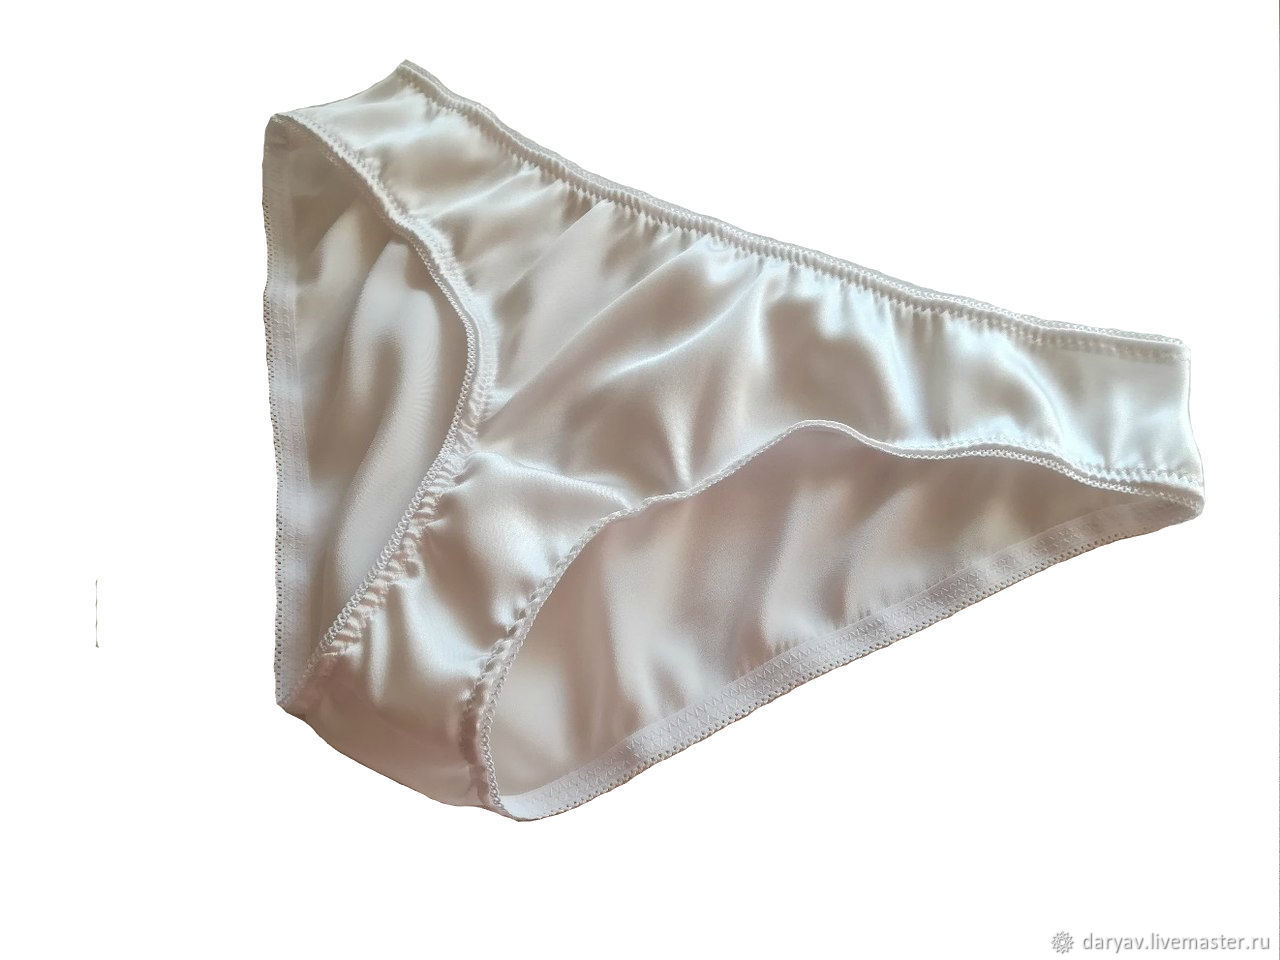 White silk underwear